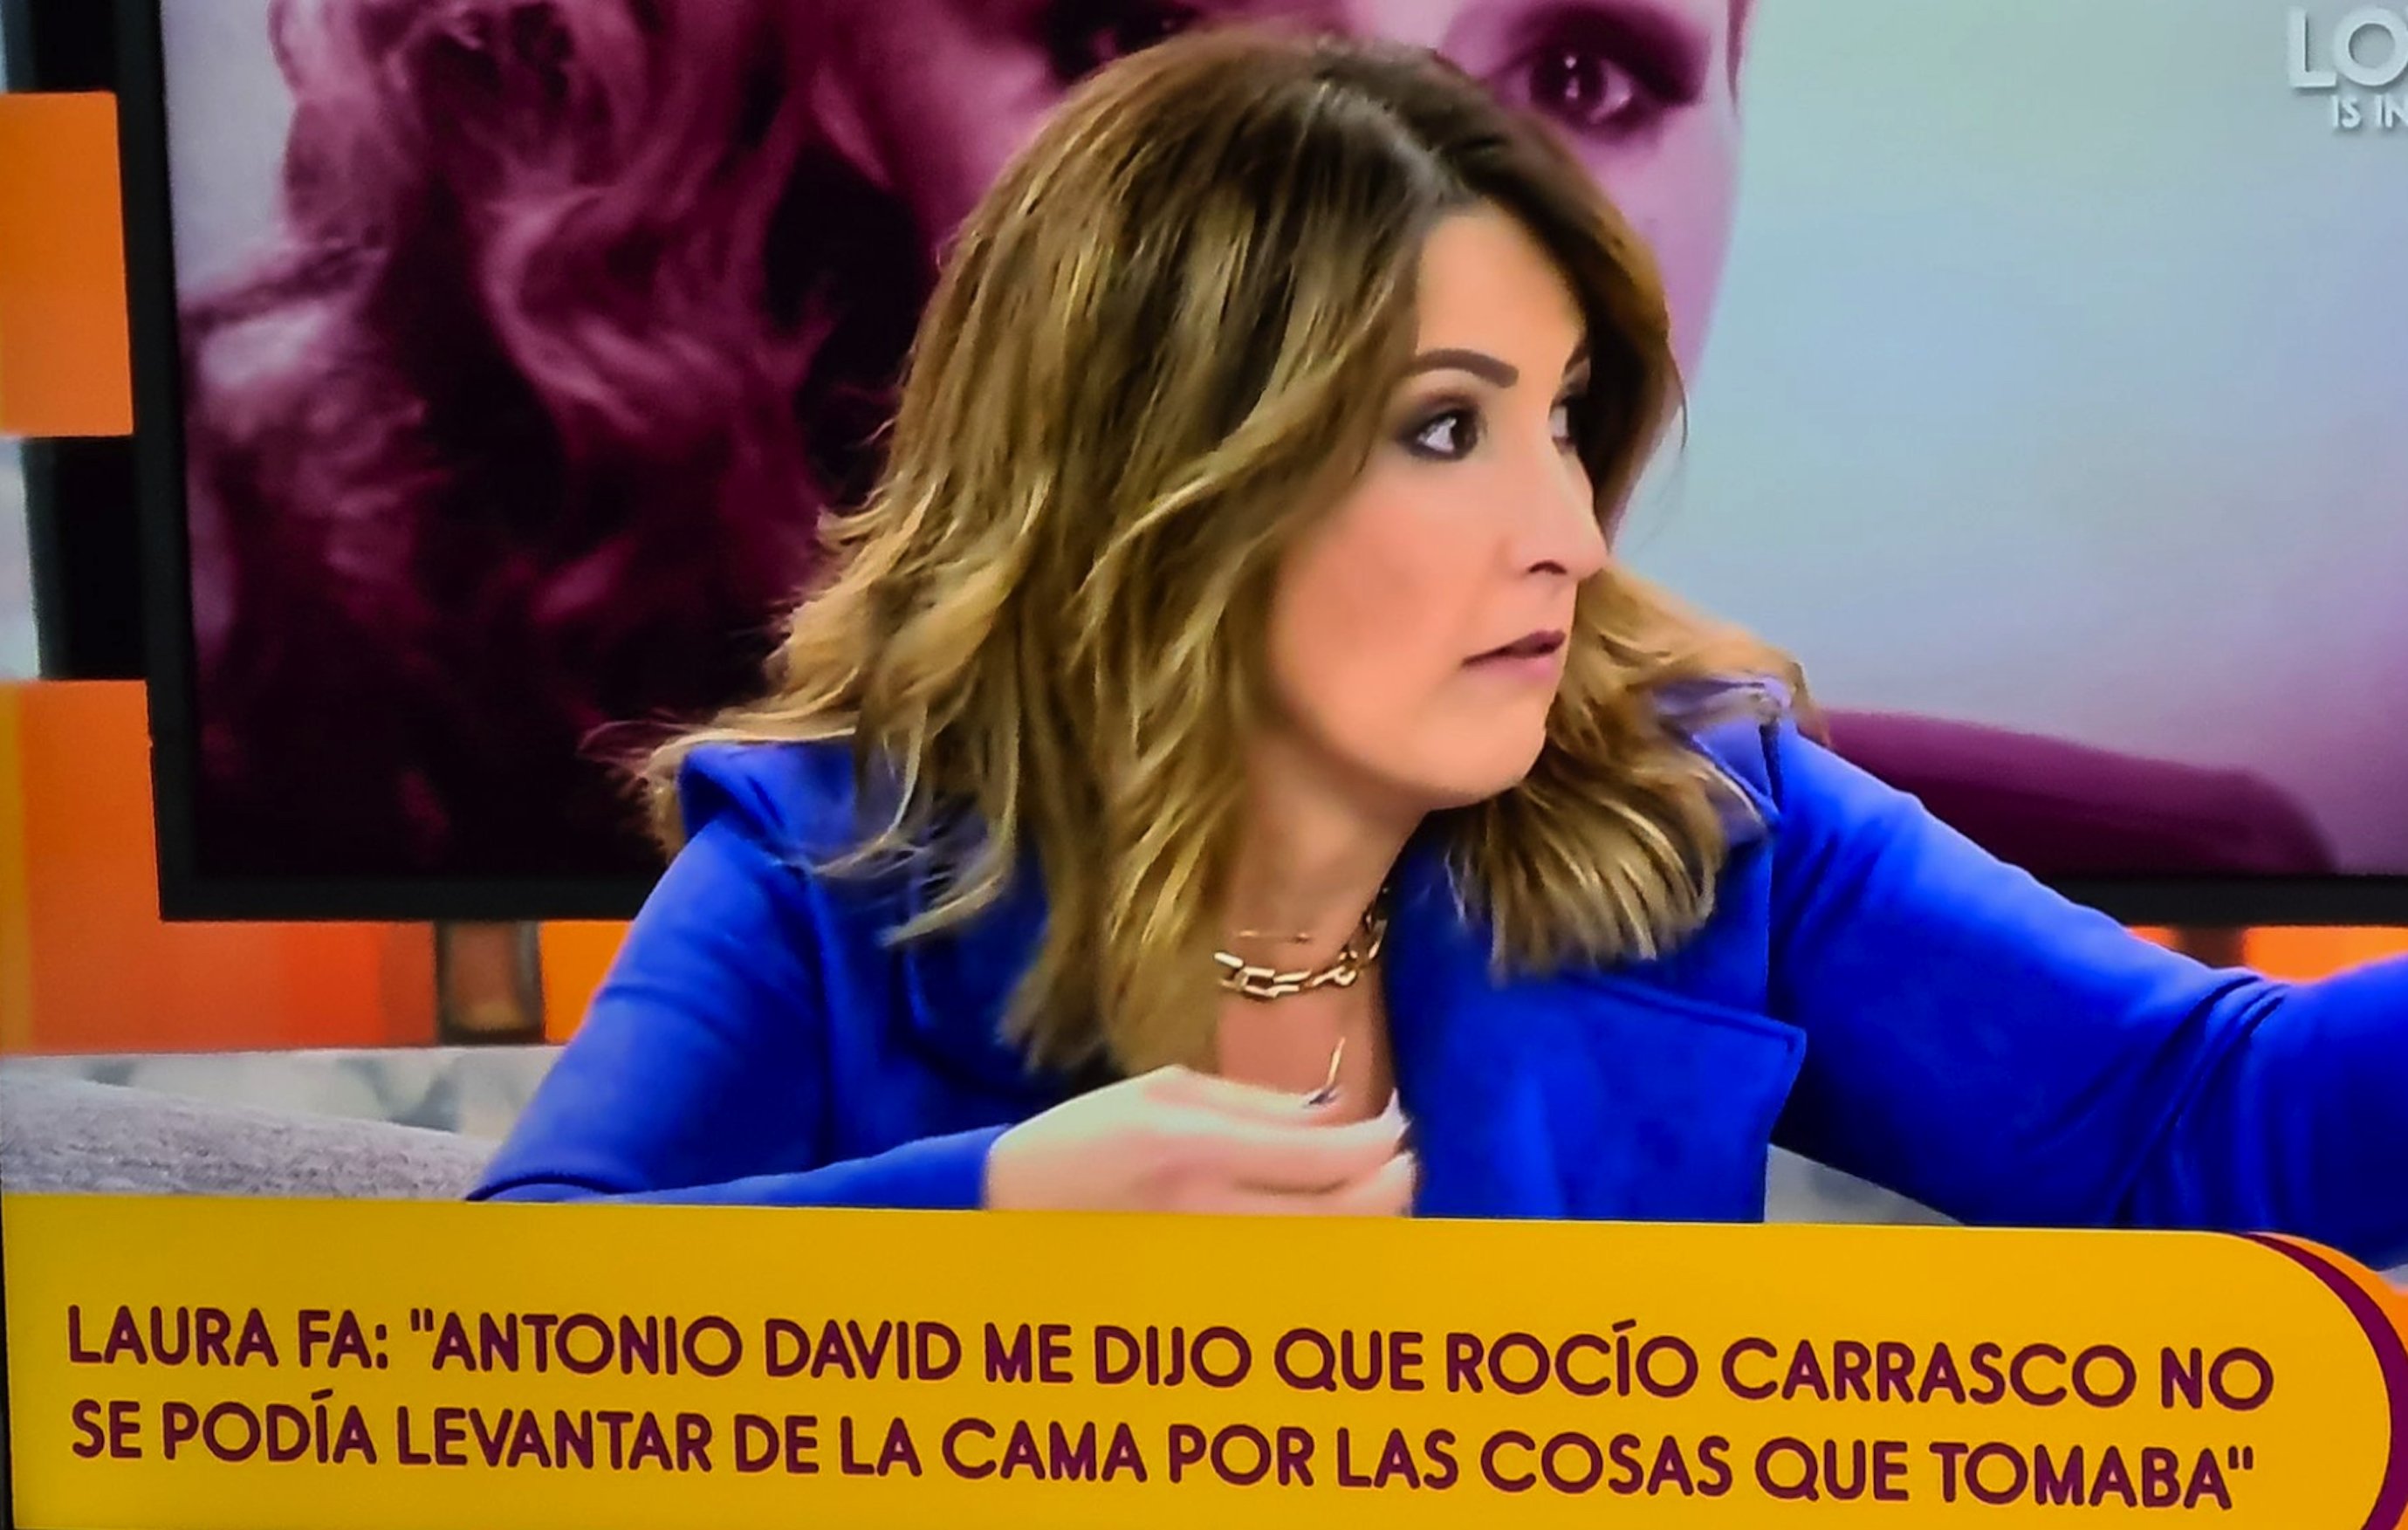 Laura Fa destapa la gran mentida d'Antonio David sobre Rociíto: "no me amenaces"